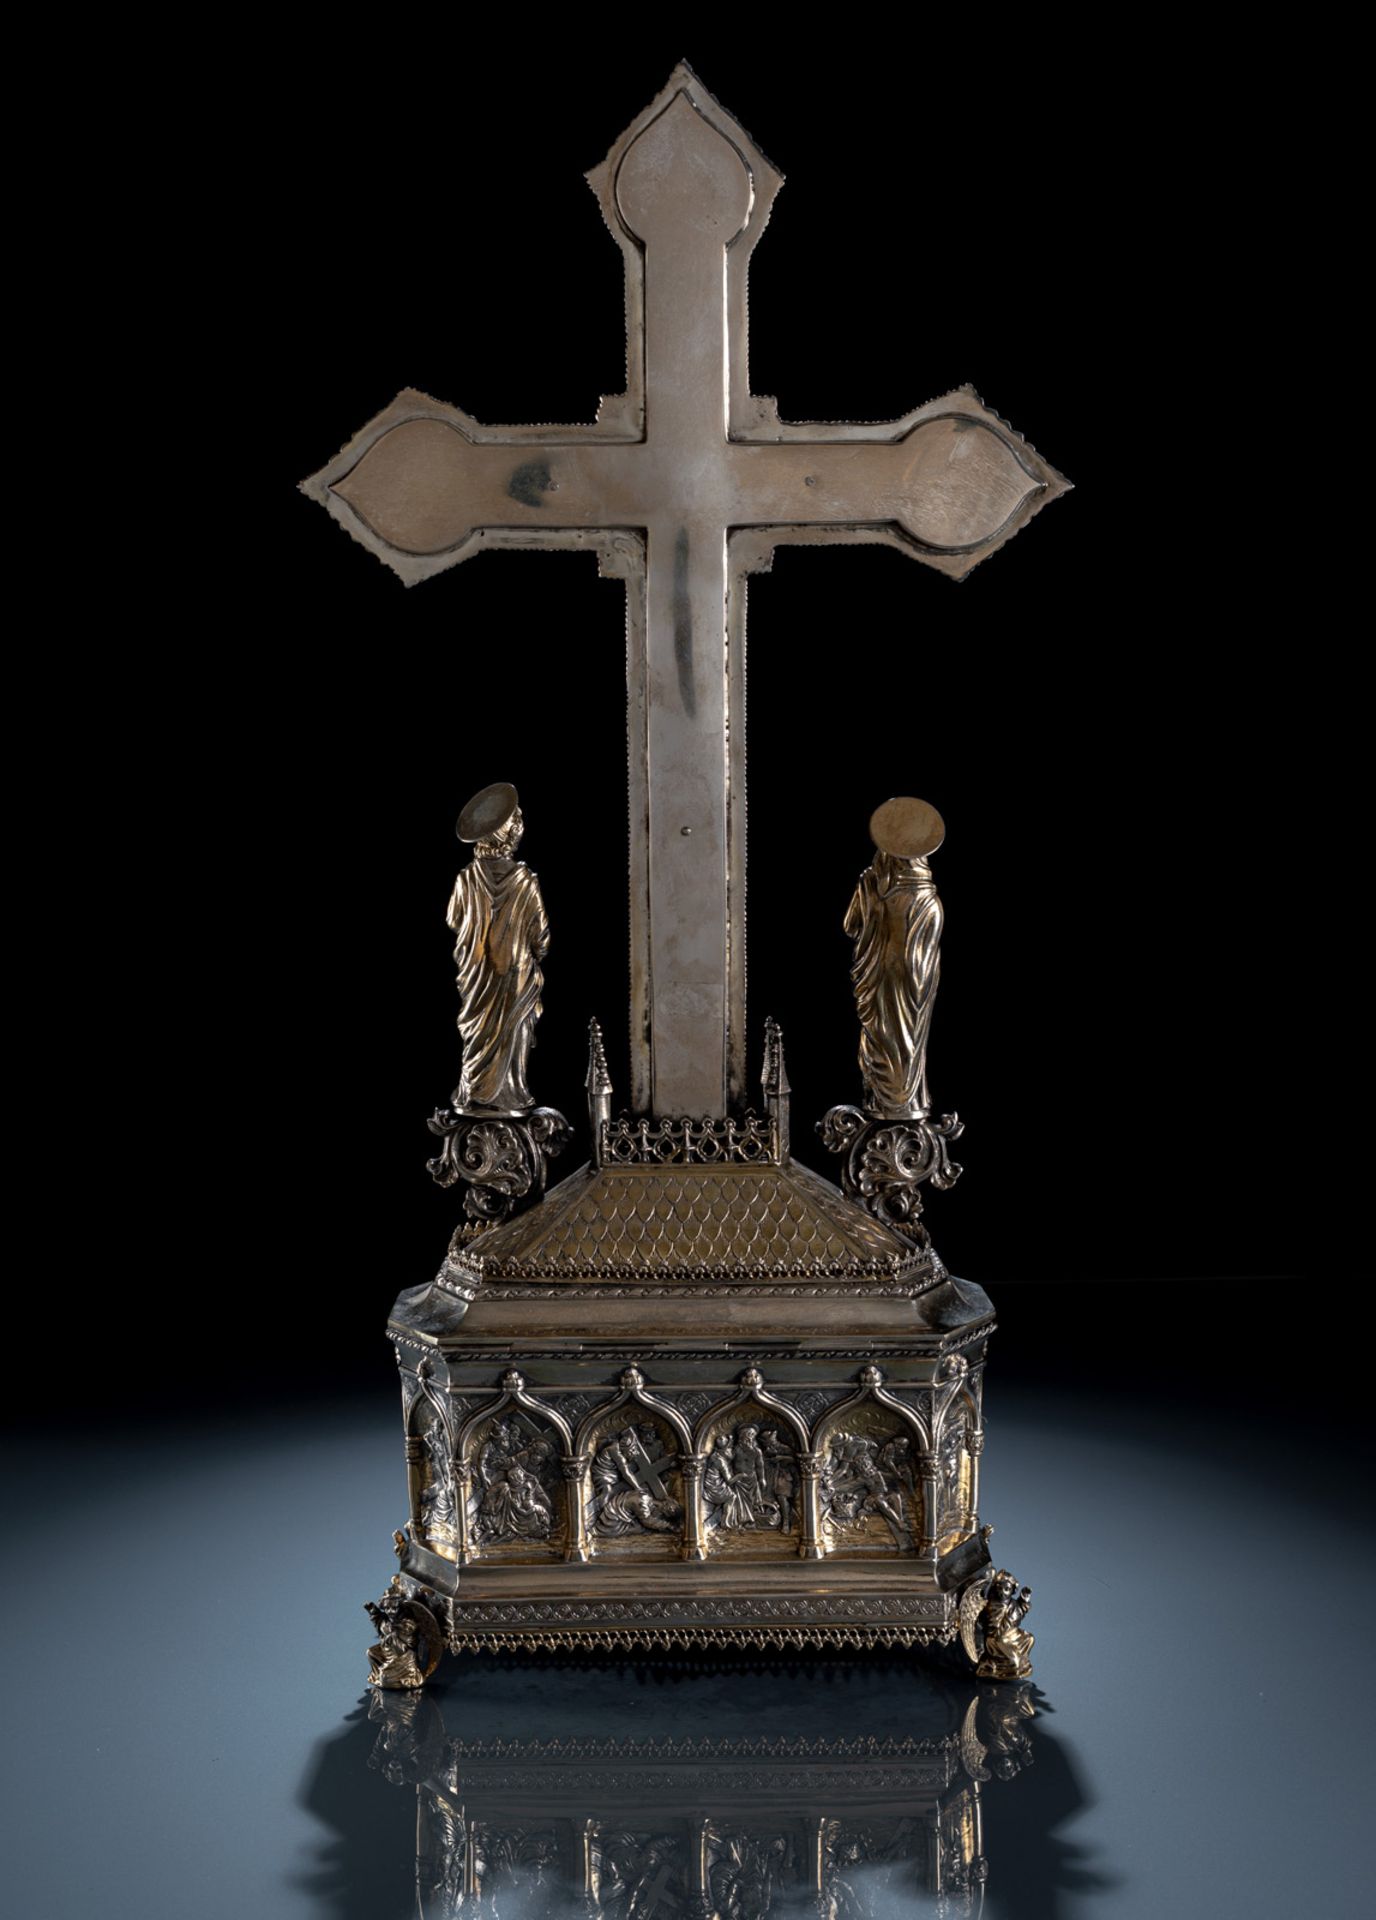 Prunkvolle Reliquienschatulle mit Kruzifix und Paar Leuchter im gotischen Stil - Bild 3 aus 4